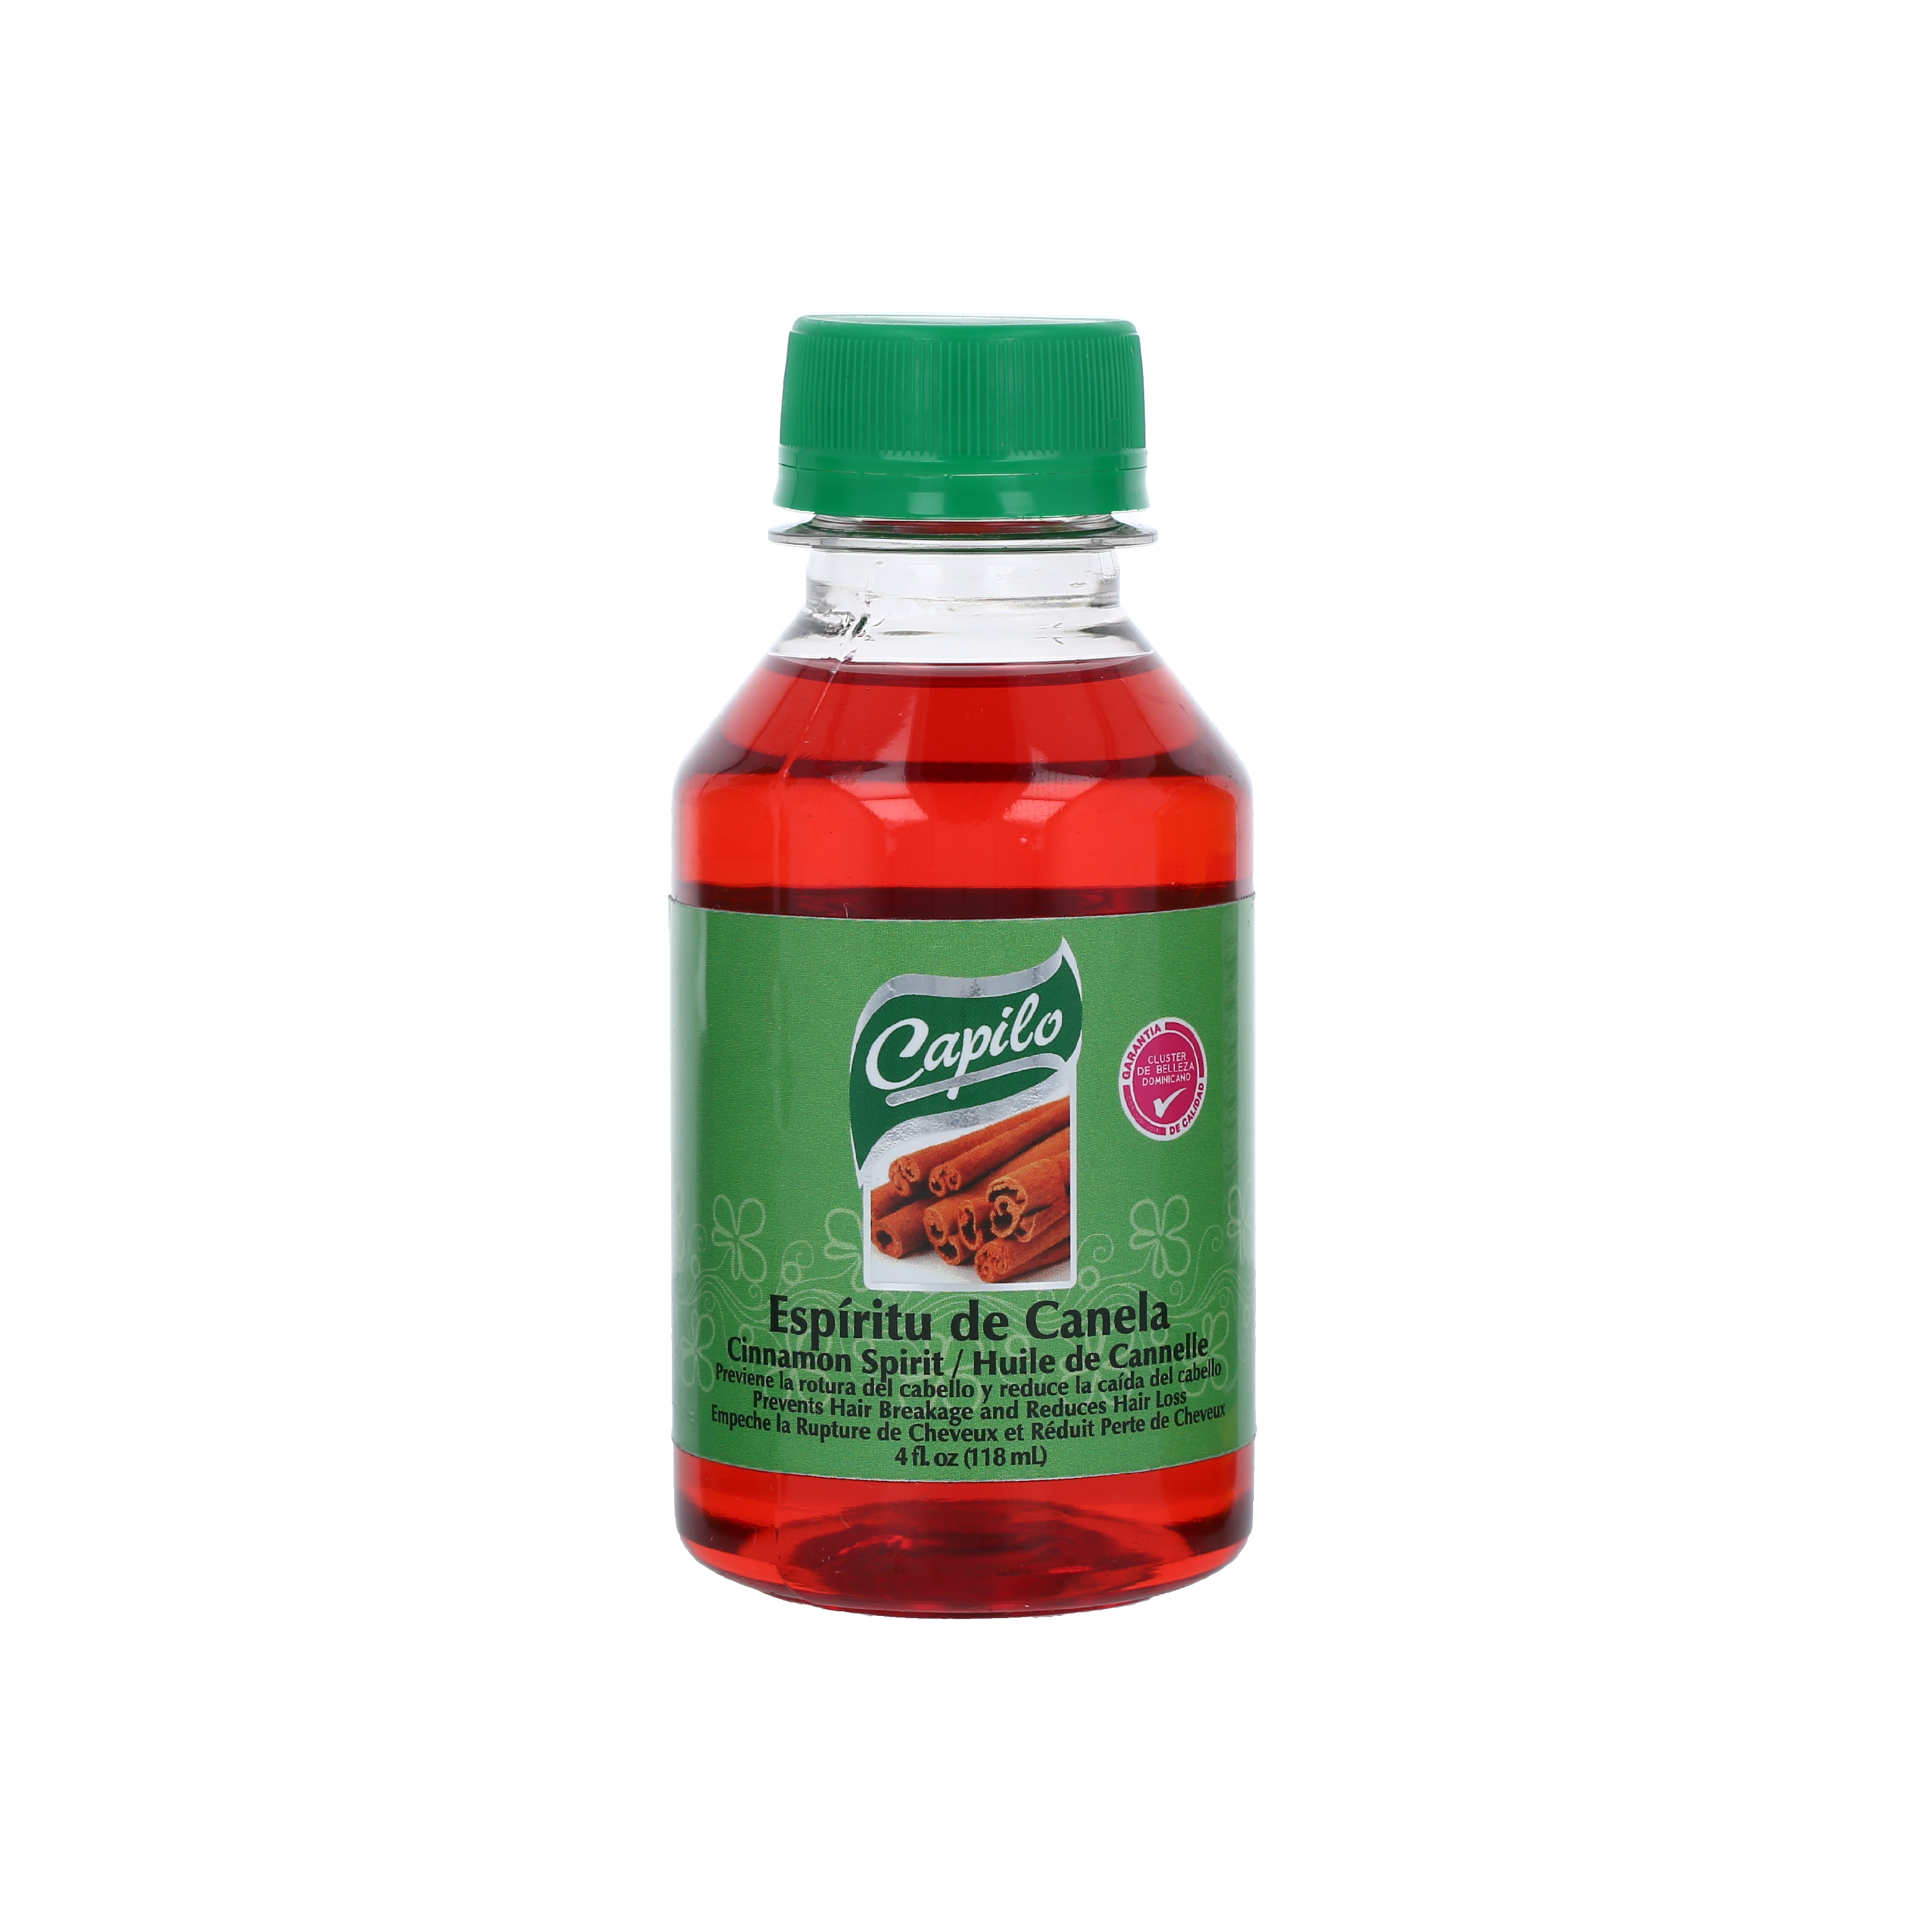 Capilo Cinnamon Spirit Oil, Fórmula para fortalecedor capilar